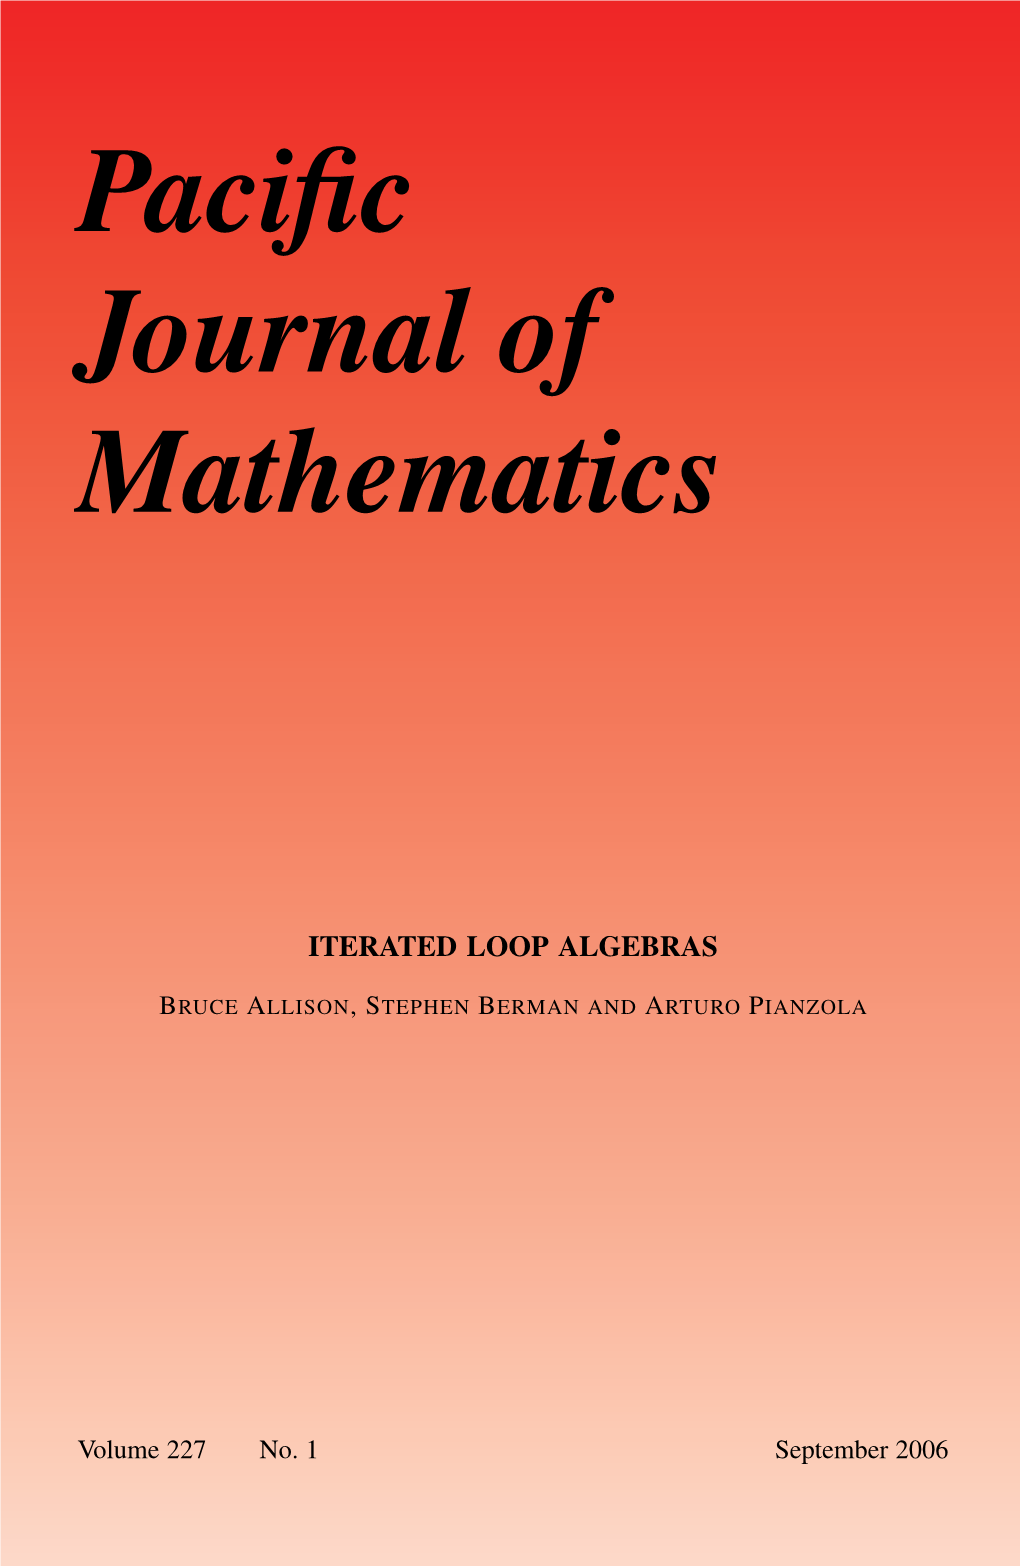 Iterated Loop Algebras